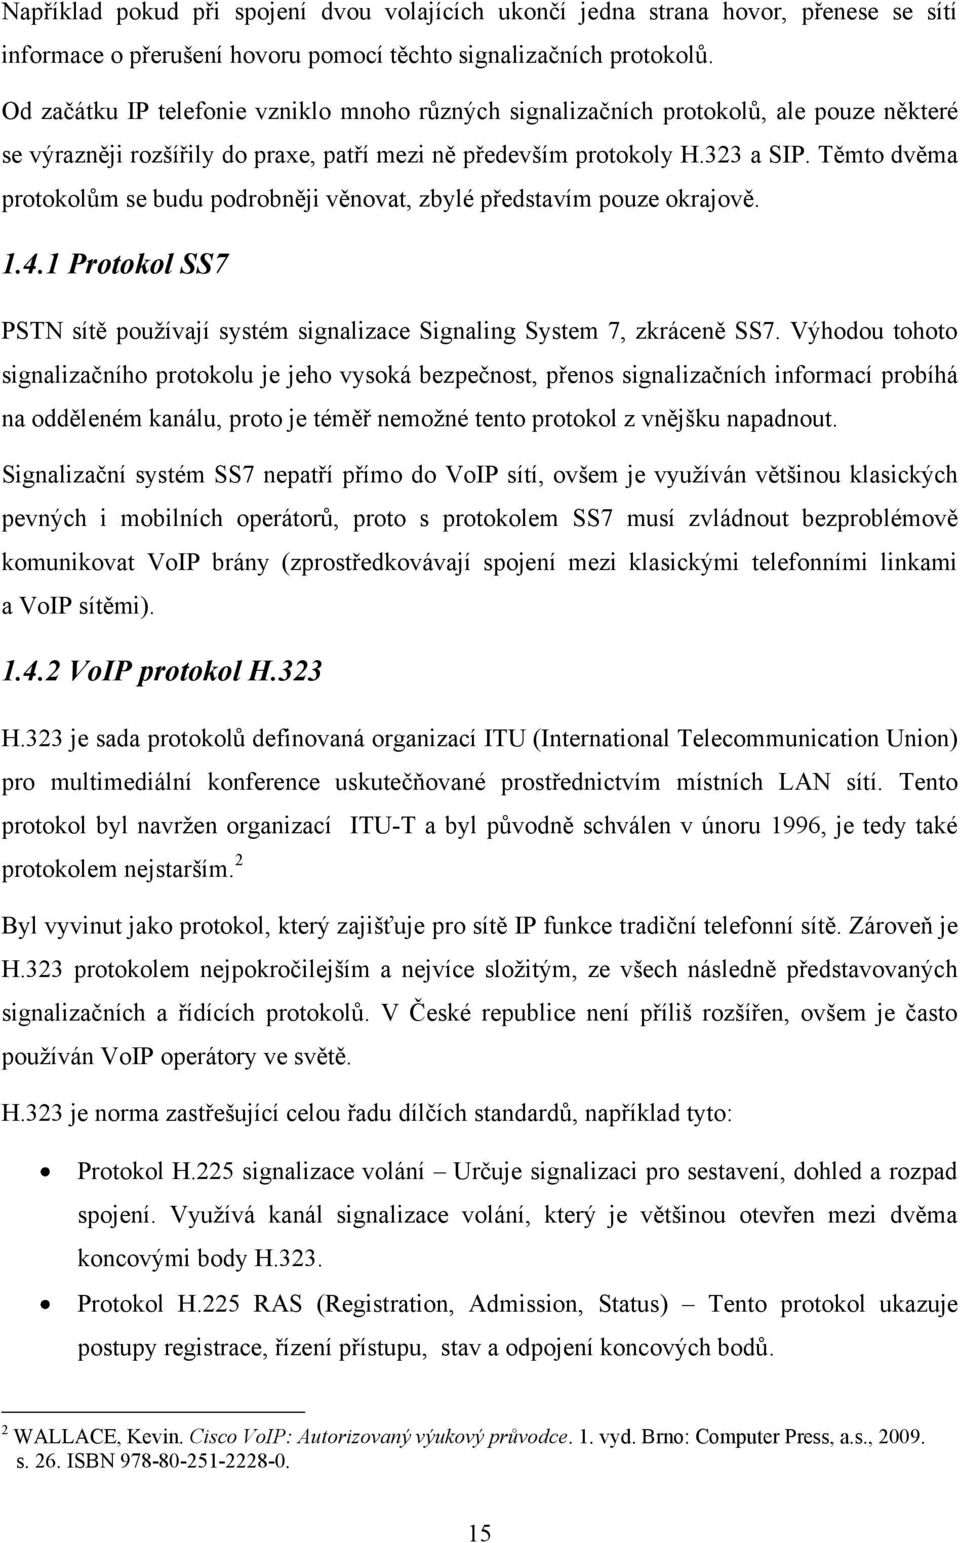 Těmto dvěma protokolům se budu podrobněji věnovat, zbylé představím pouze okrajově. 1.4.1 Protokol SS7 PSTN sítě pouţívají systém signalizace Signaling System 7, zkráceně SS7.